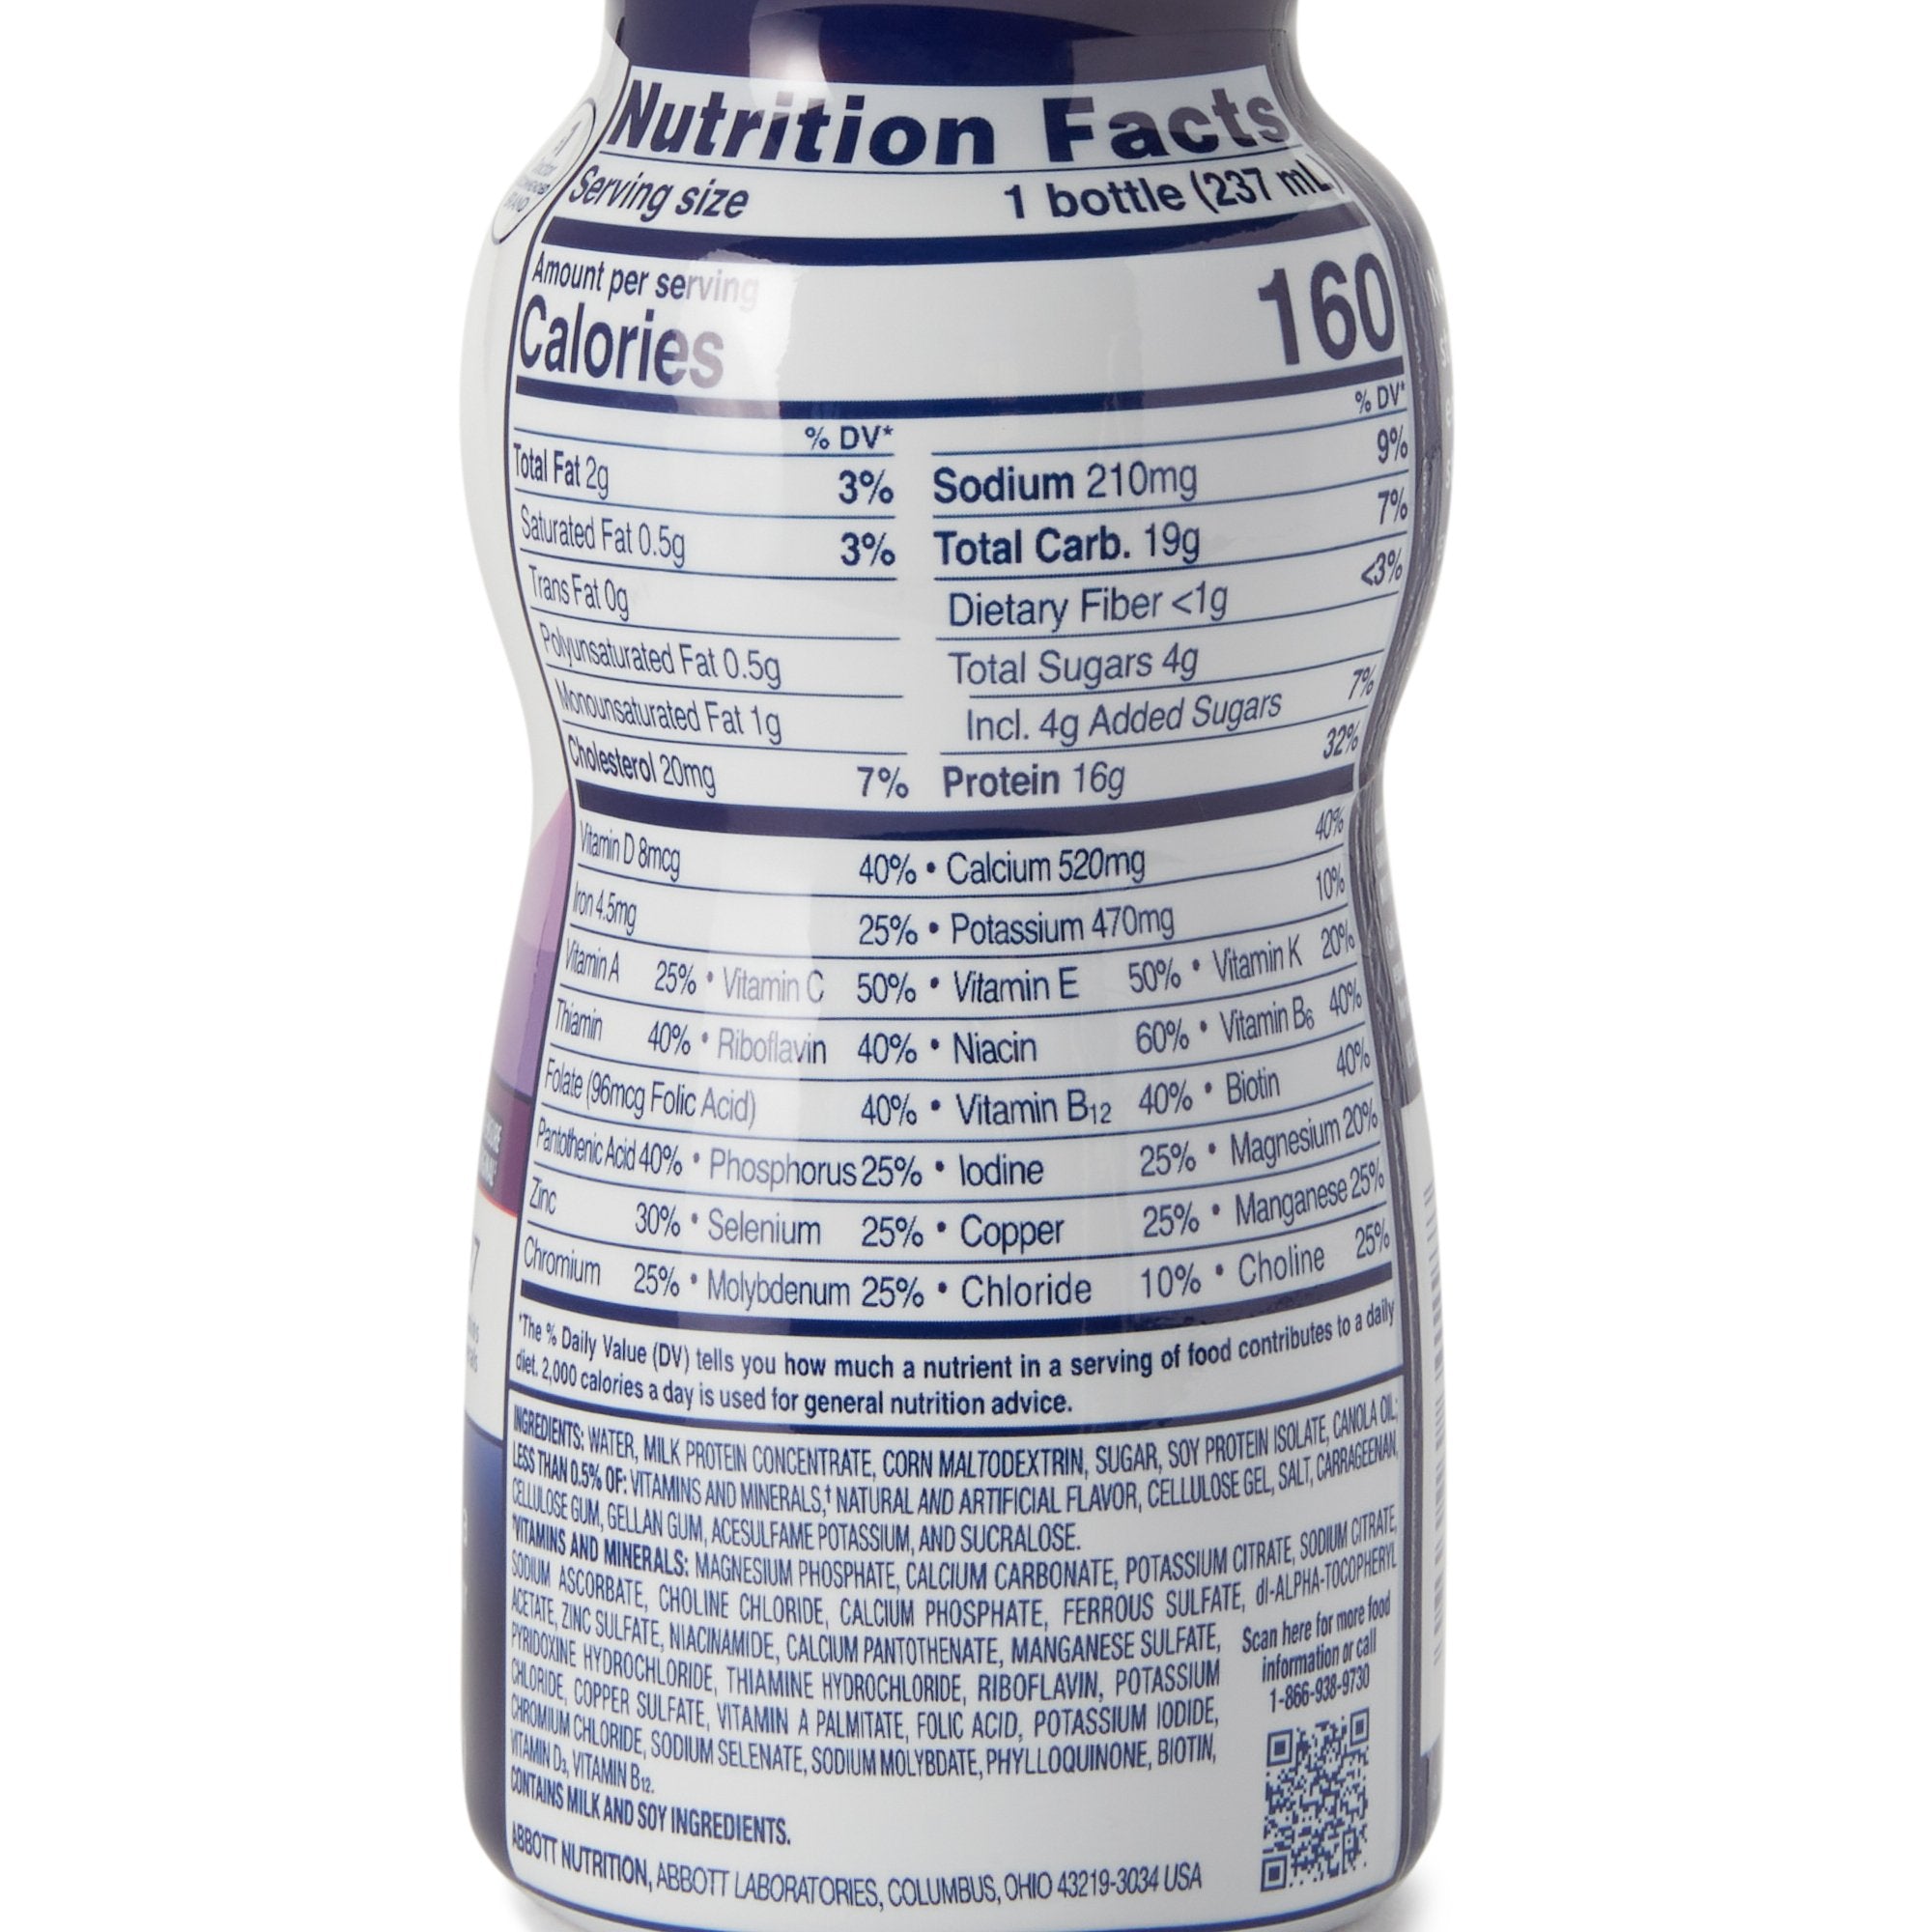 Oral Supplement Ensure High Protein Shake Vanilla Flavor Liquid 8 oz. Bottle